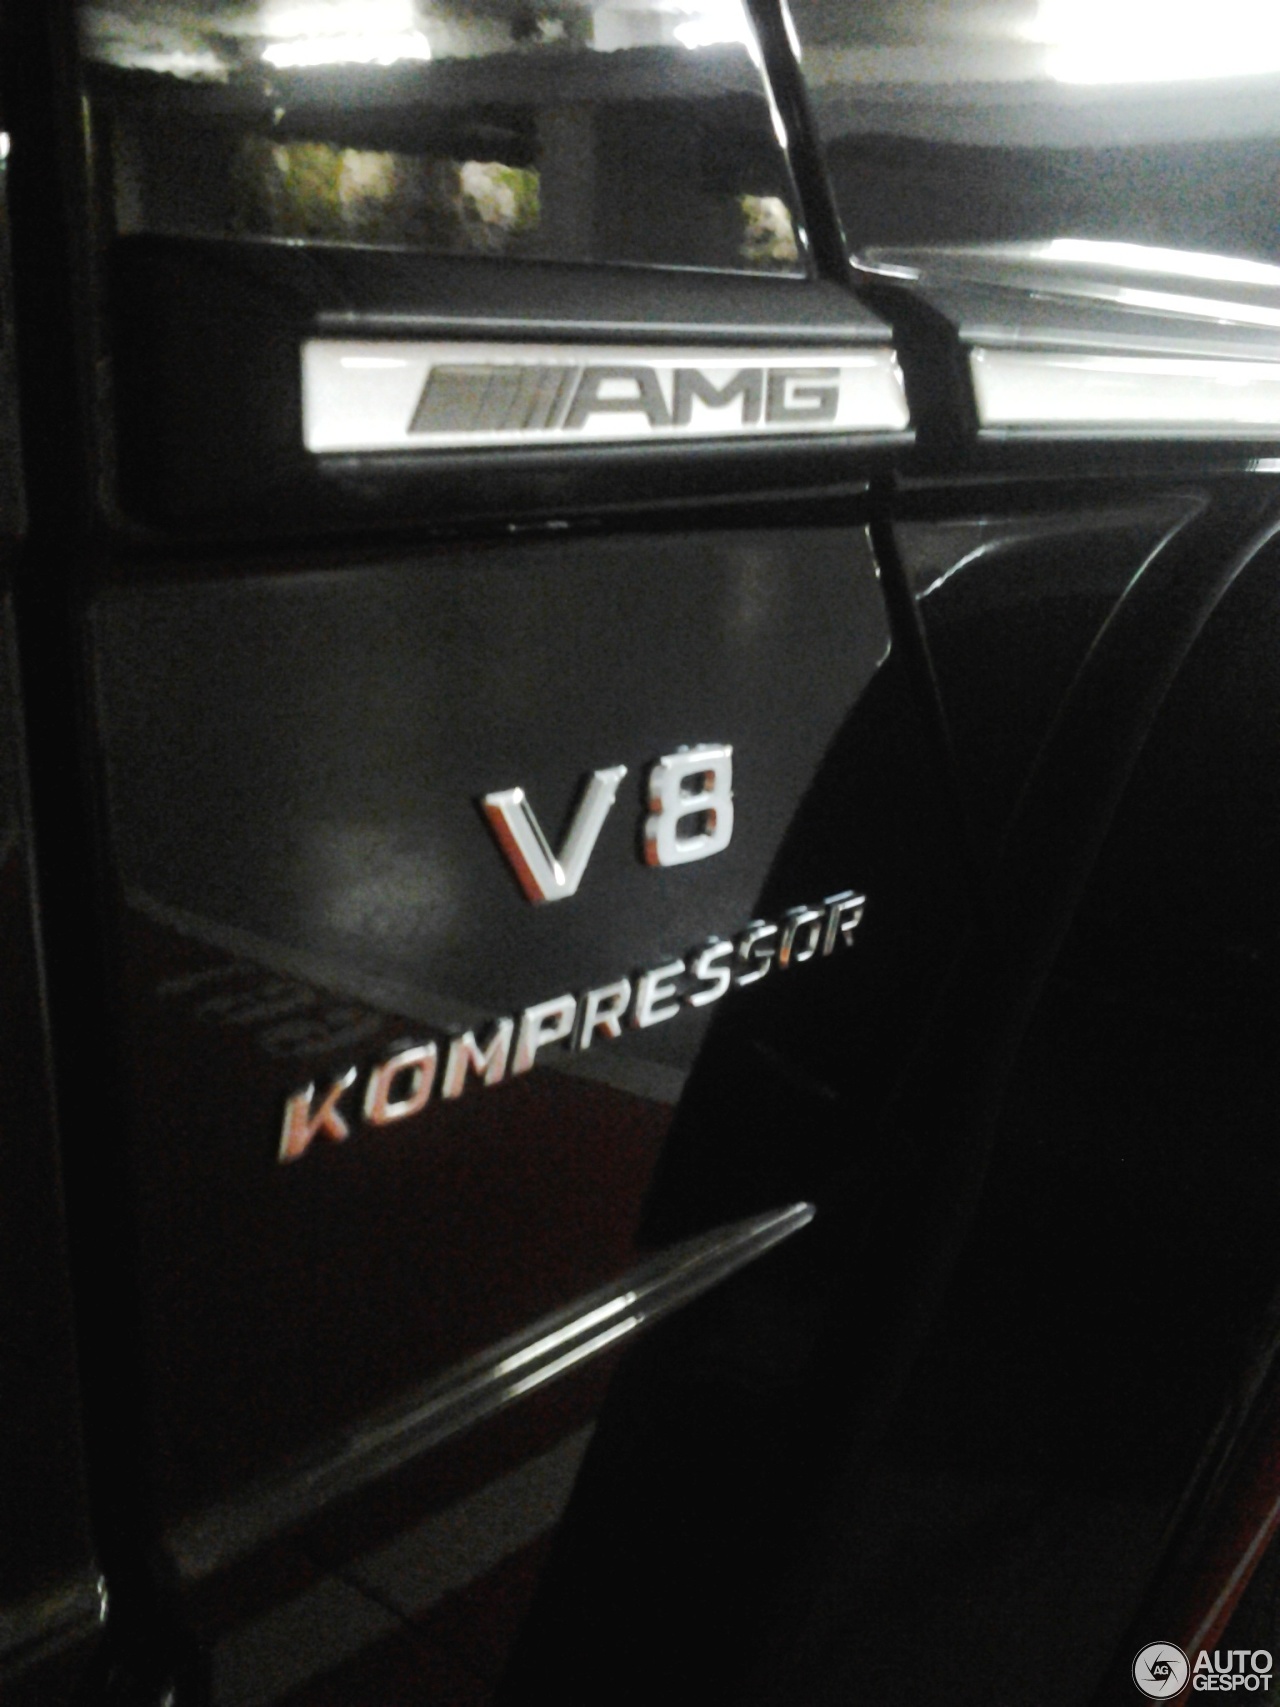 Mercedes-Benz G 55 AMG Kompressor 2010